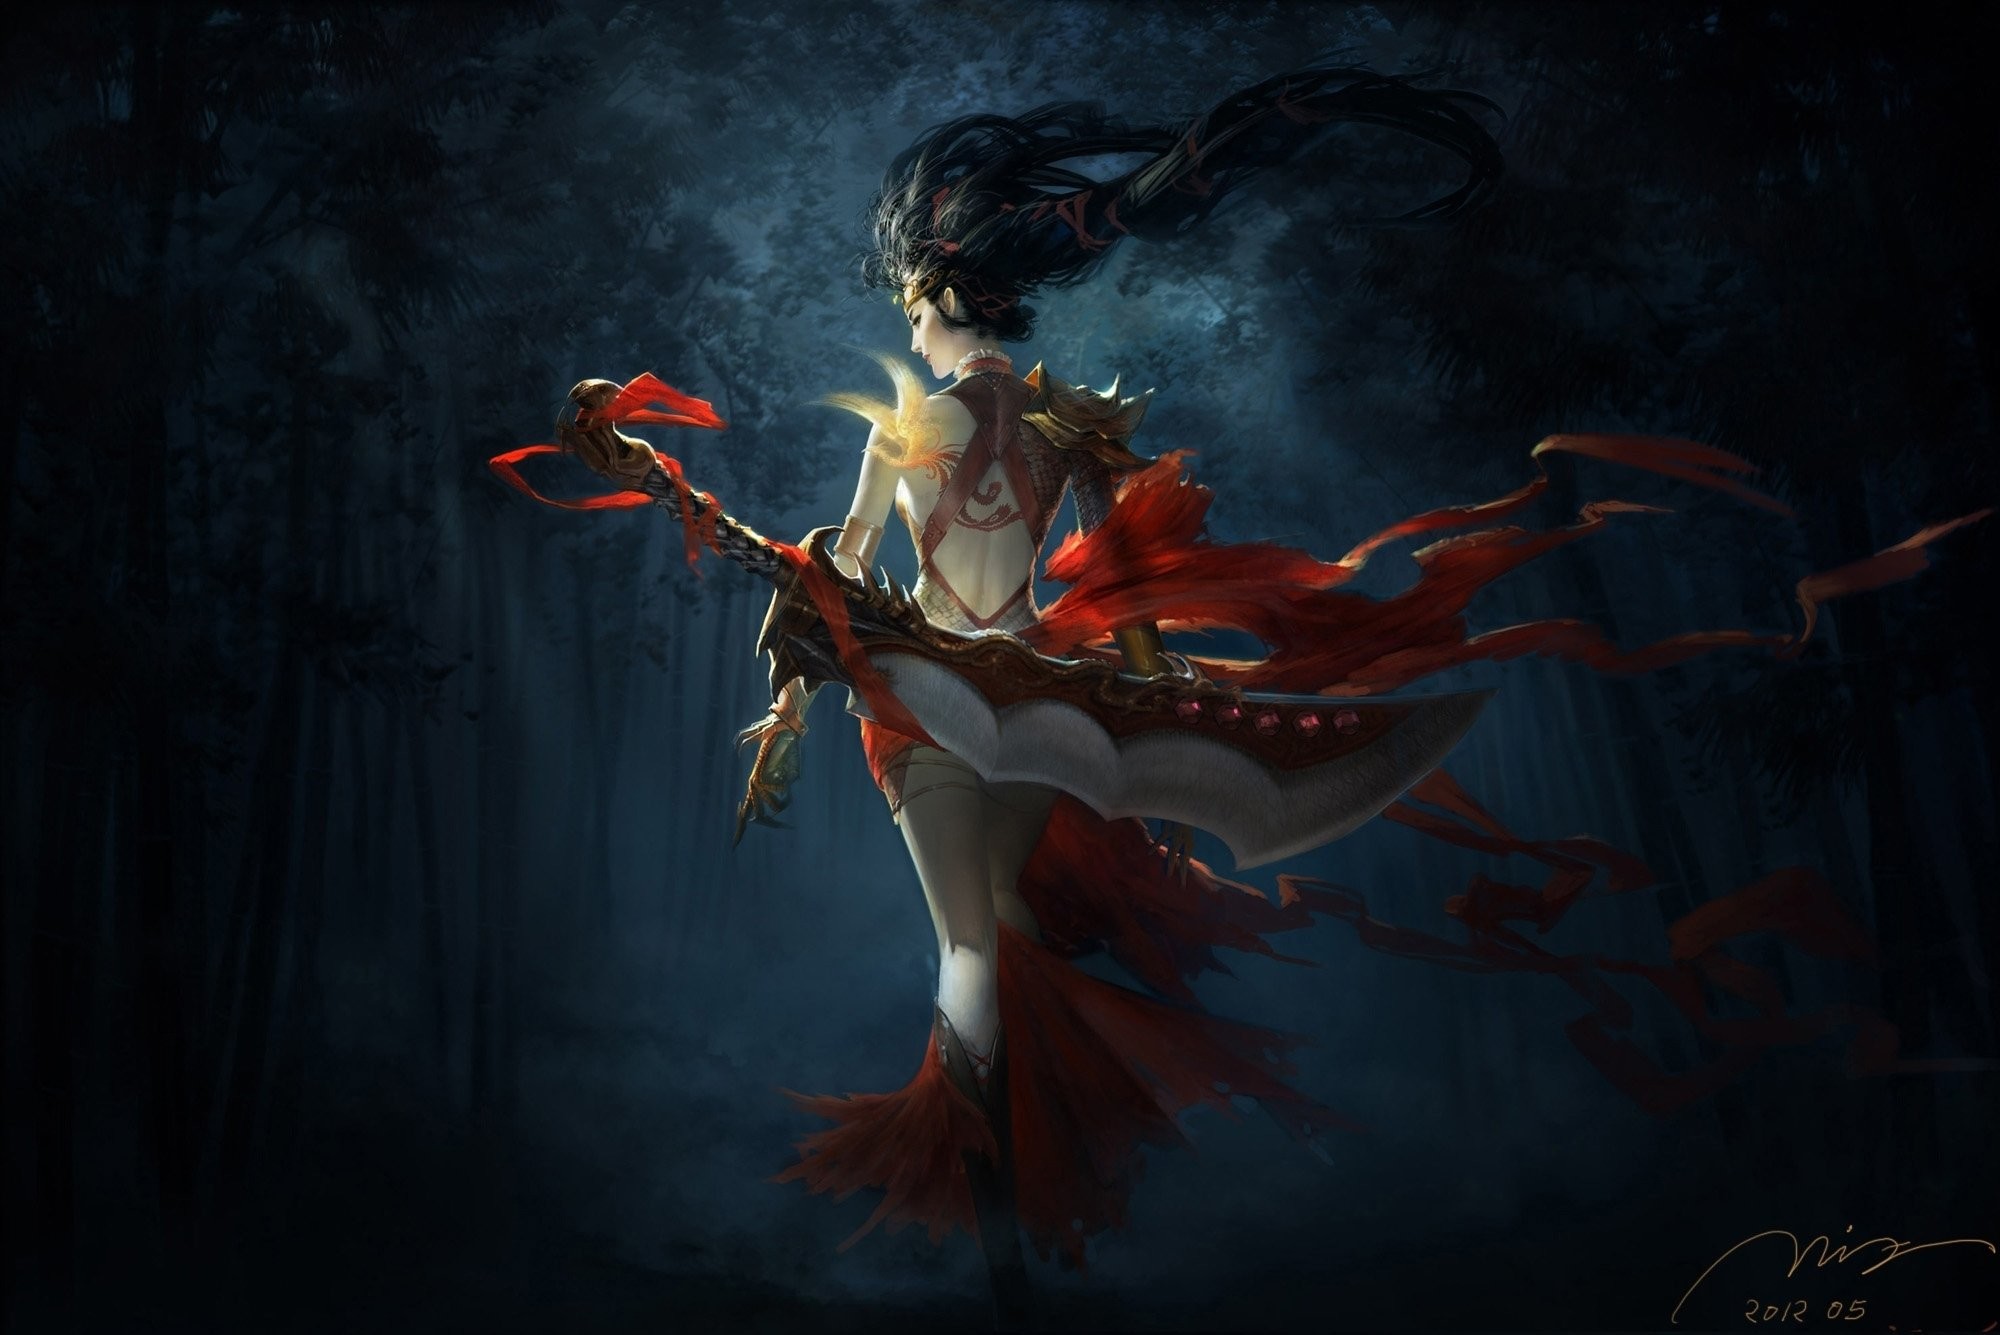 2000x1335 Art girl Warrior weapon sword tape red forest bamboo night dark bird tattoo  phoenix back wallpaper |  | 500393 | WallpaperUP